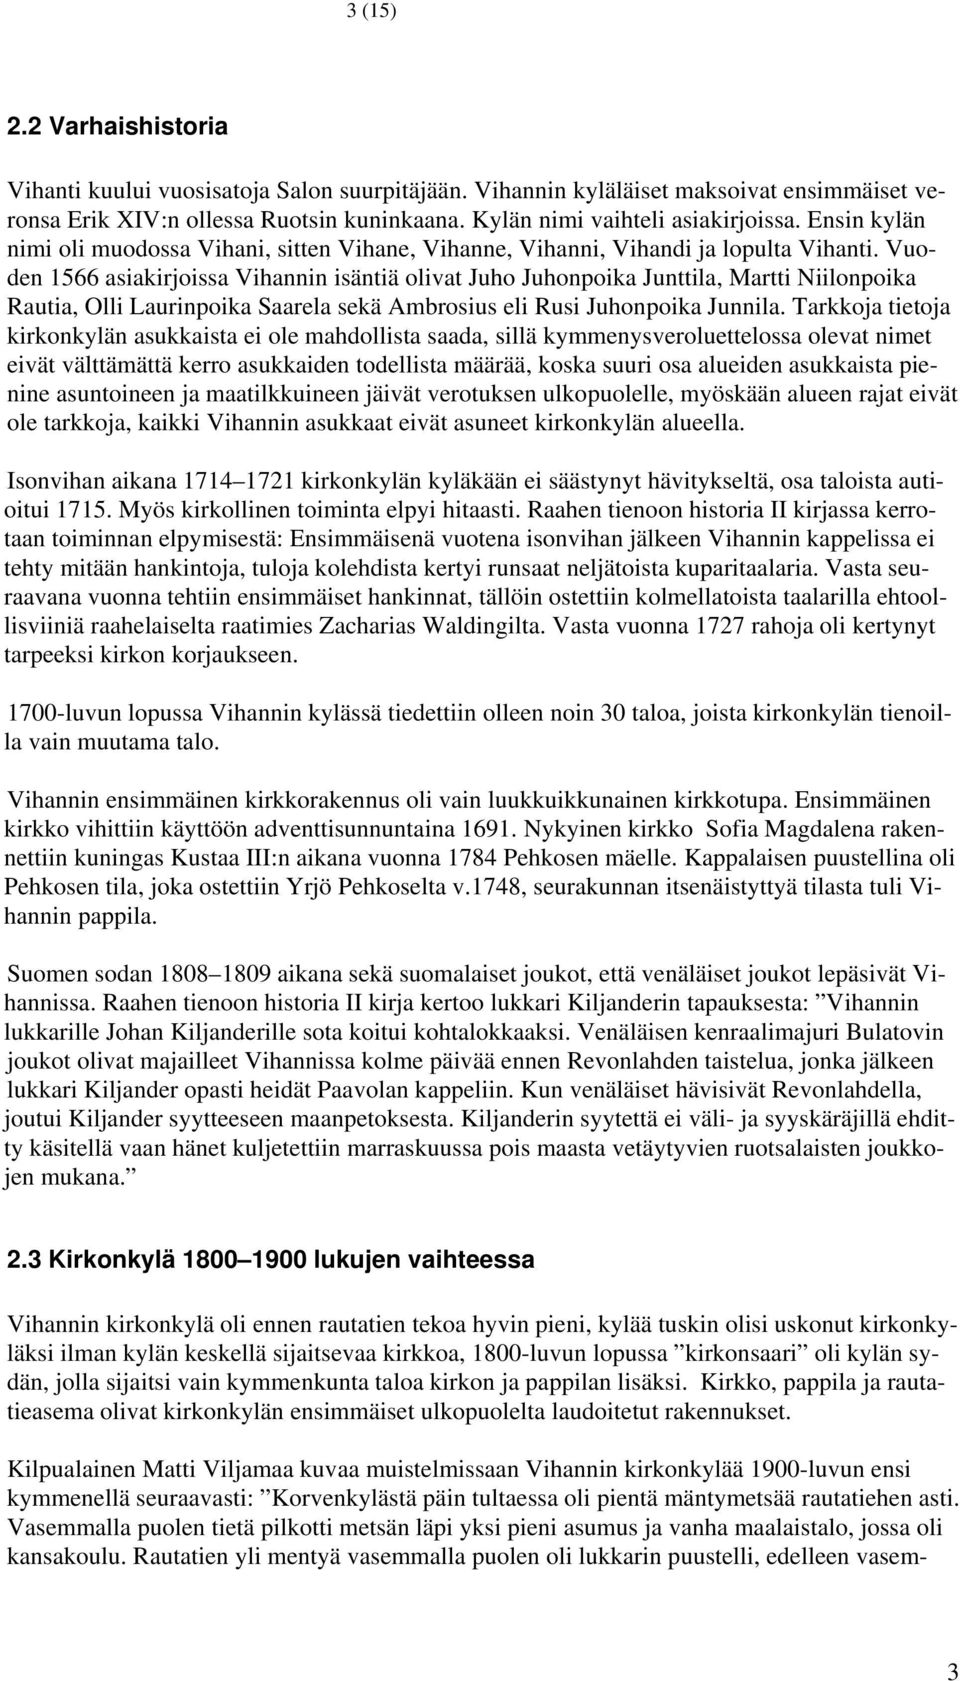 Vuoden 1566 asiakirjoissa Vihannin isäntiä olivat Juho Juhonpoika Junttila, Martti Niilonpoika Rautia, Olli Laurinpoika Saarela sekä Ambrosius eli Rusi Juhonpoika Junnila.